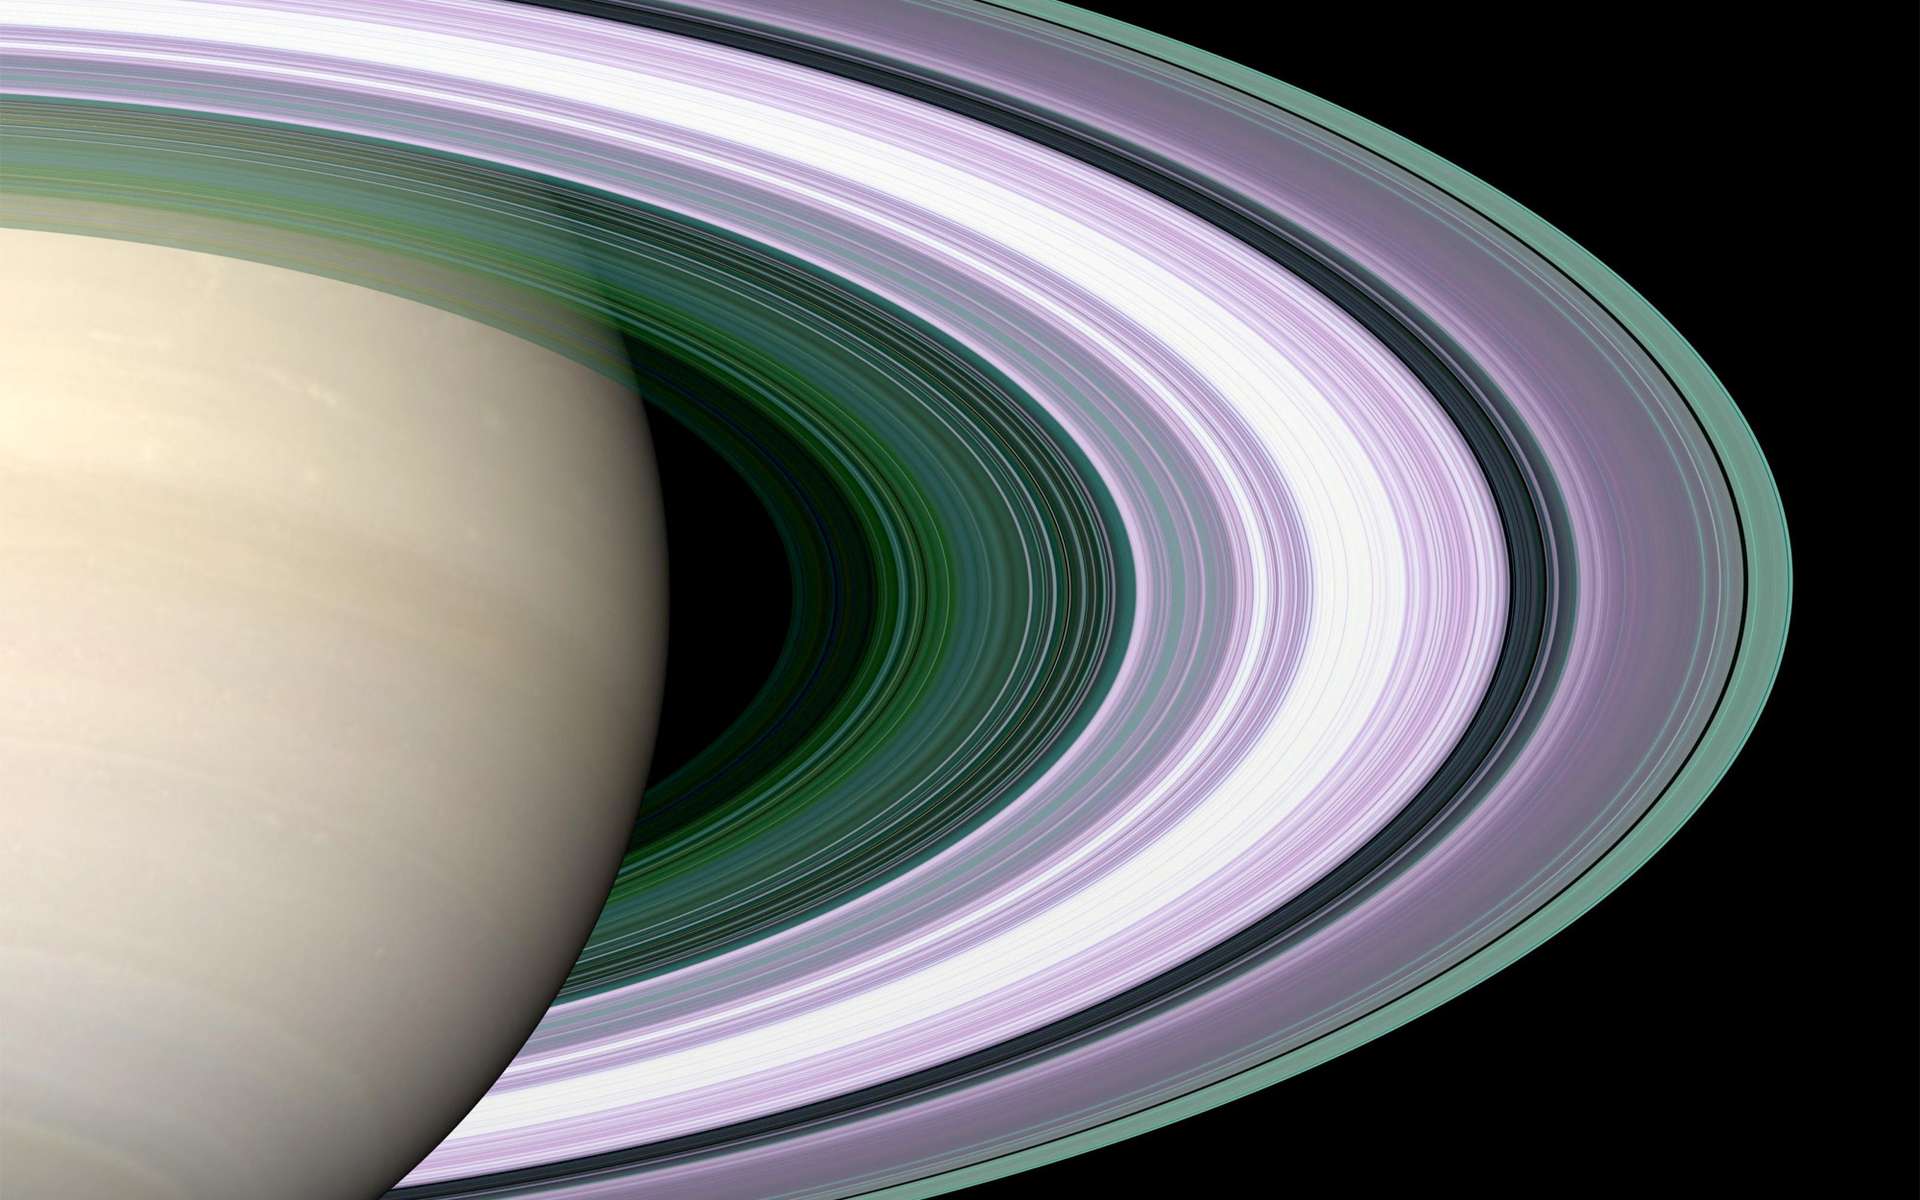 Les anneaux de Saturne sont la structure du Système solaire qui fascinent le plus. Vers 2017, la sonde Cassini devrait s'en approcher comme jamais auparavant et fournir de nouveaux éclairages sur l'histoire de leur formation et leur composition. © Nasa / JPL